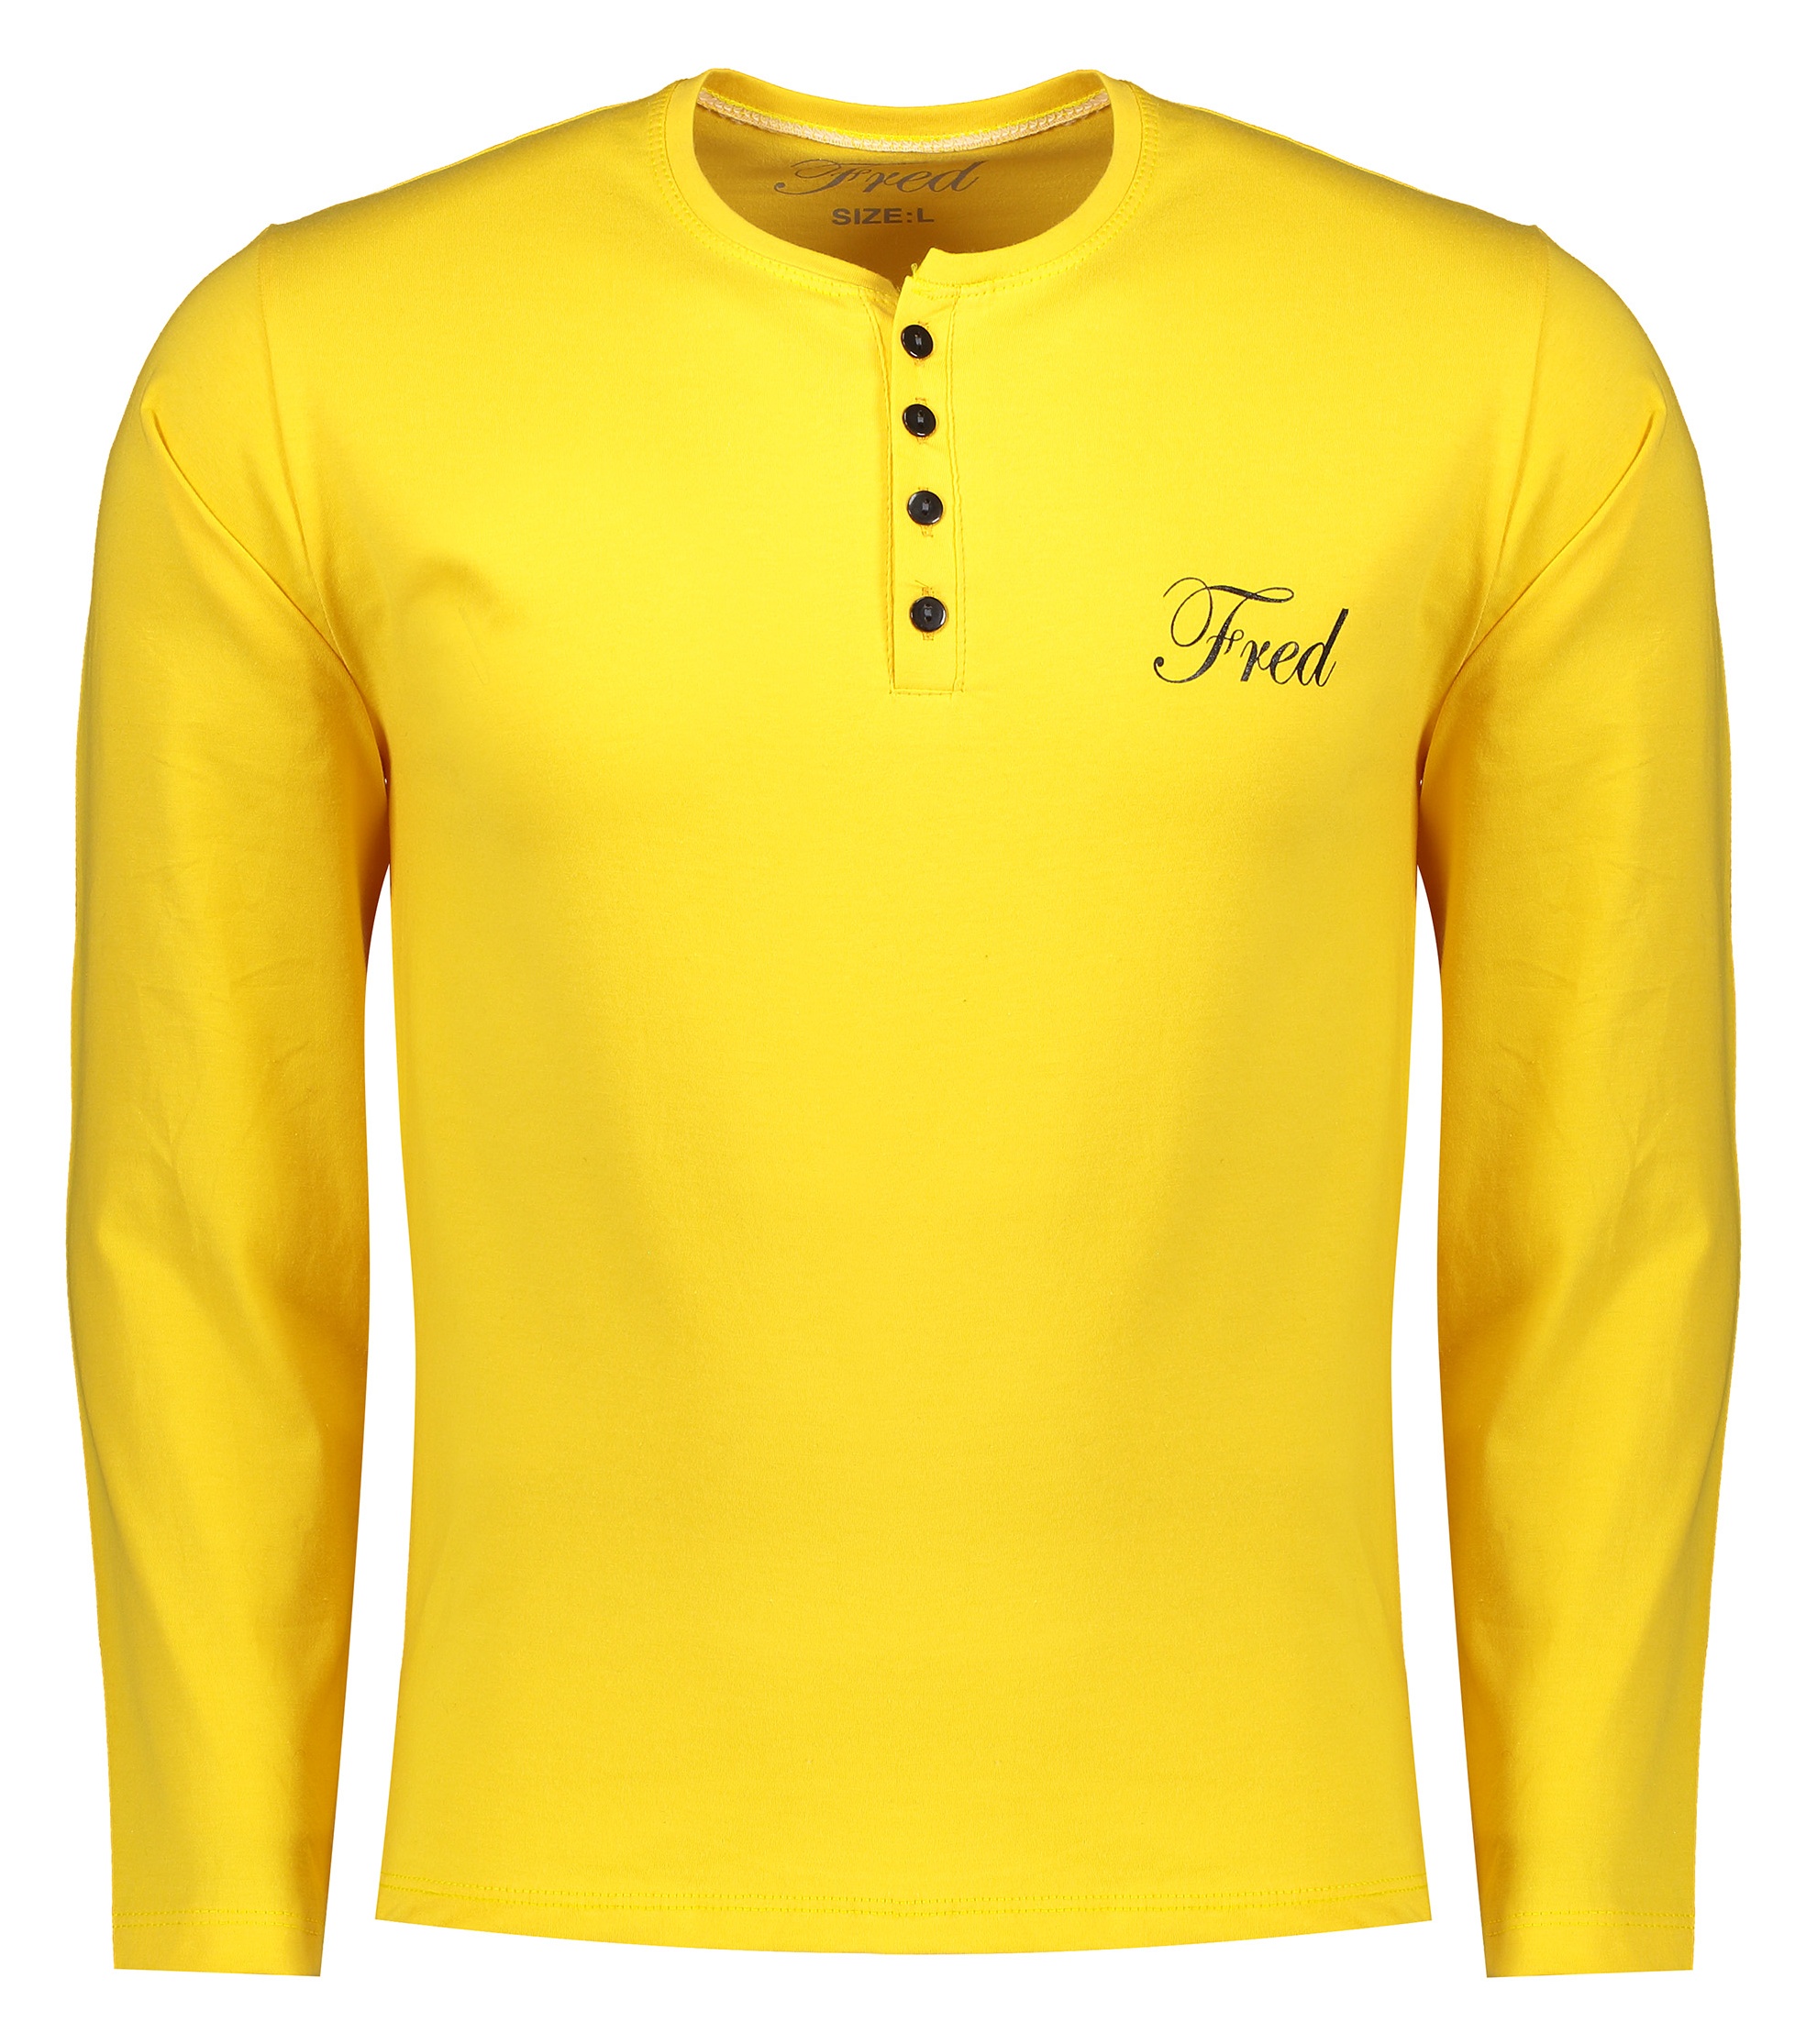 تی شرت مردانه فرد مدل t.f.013